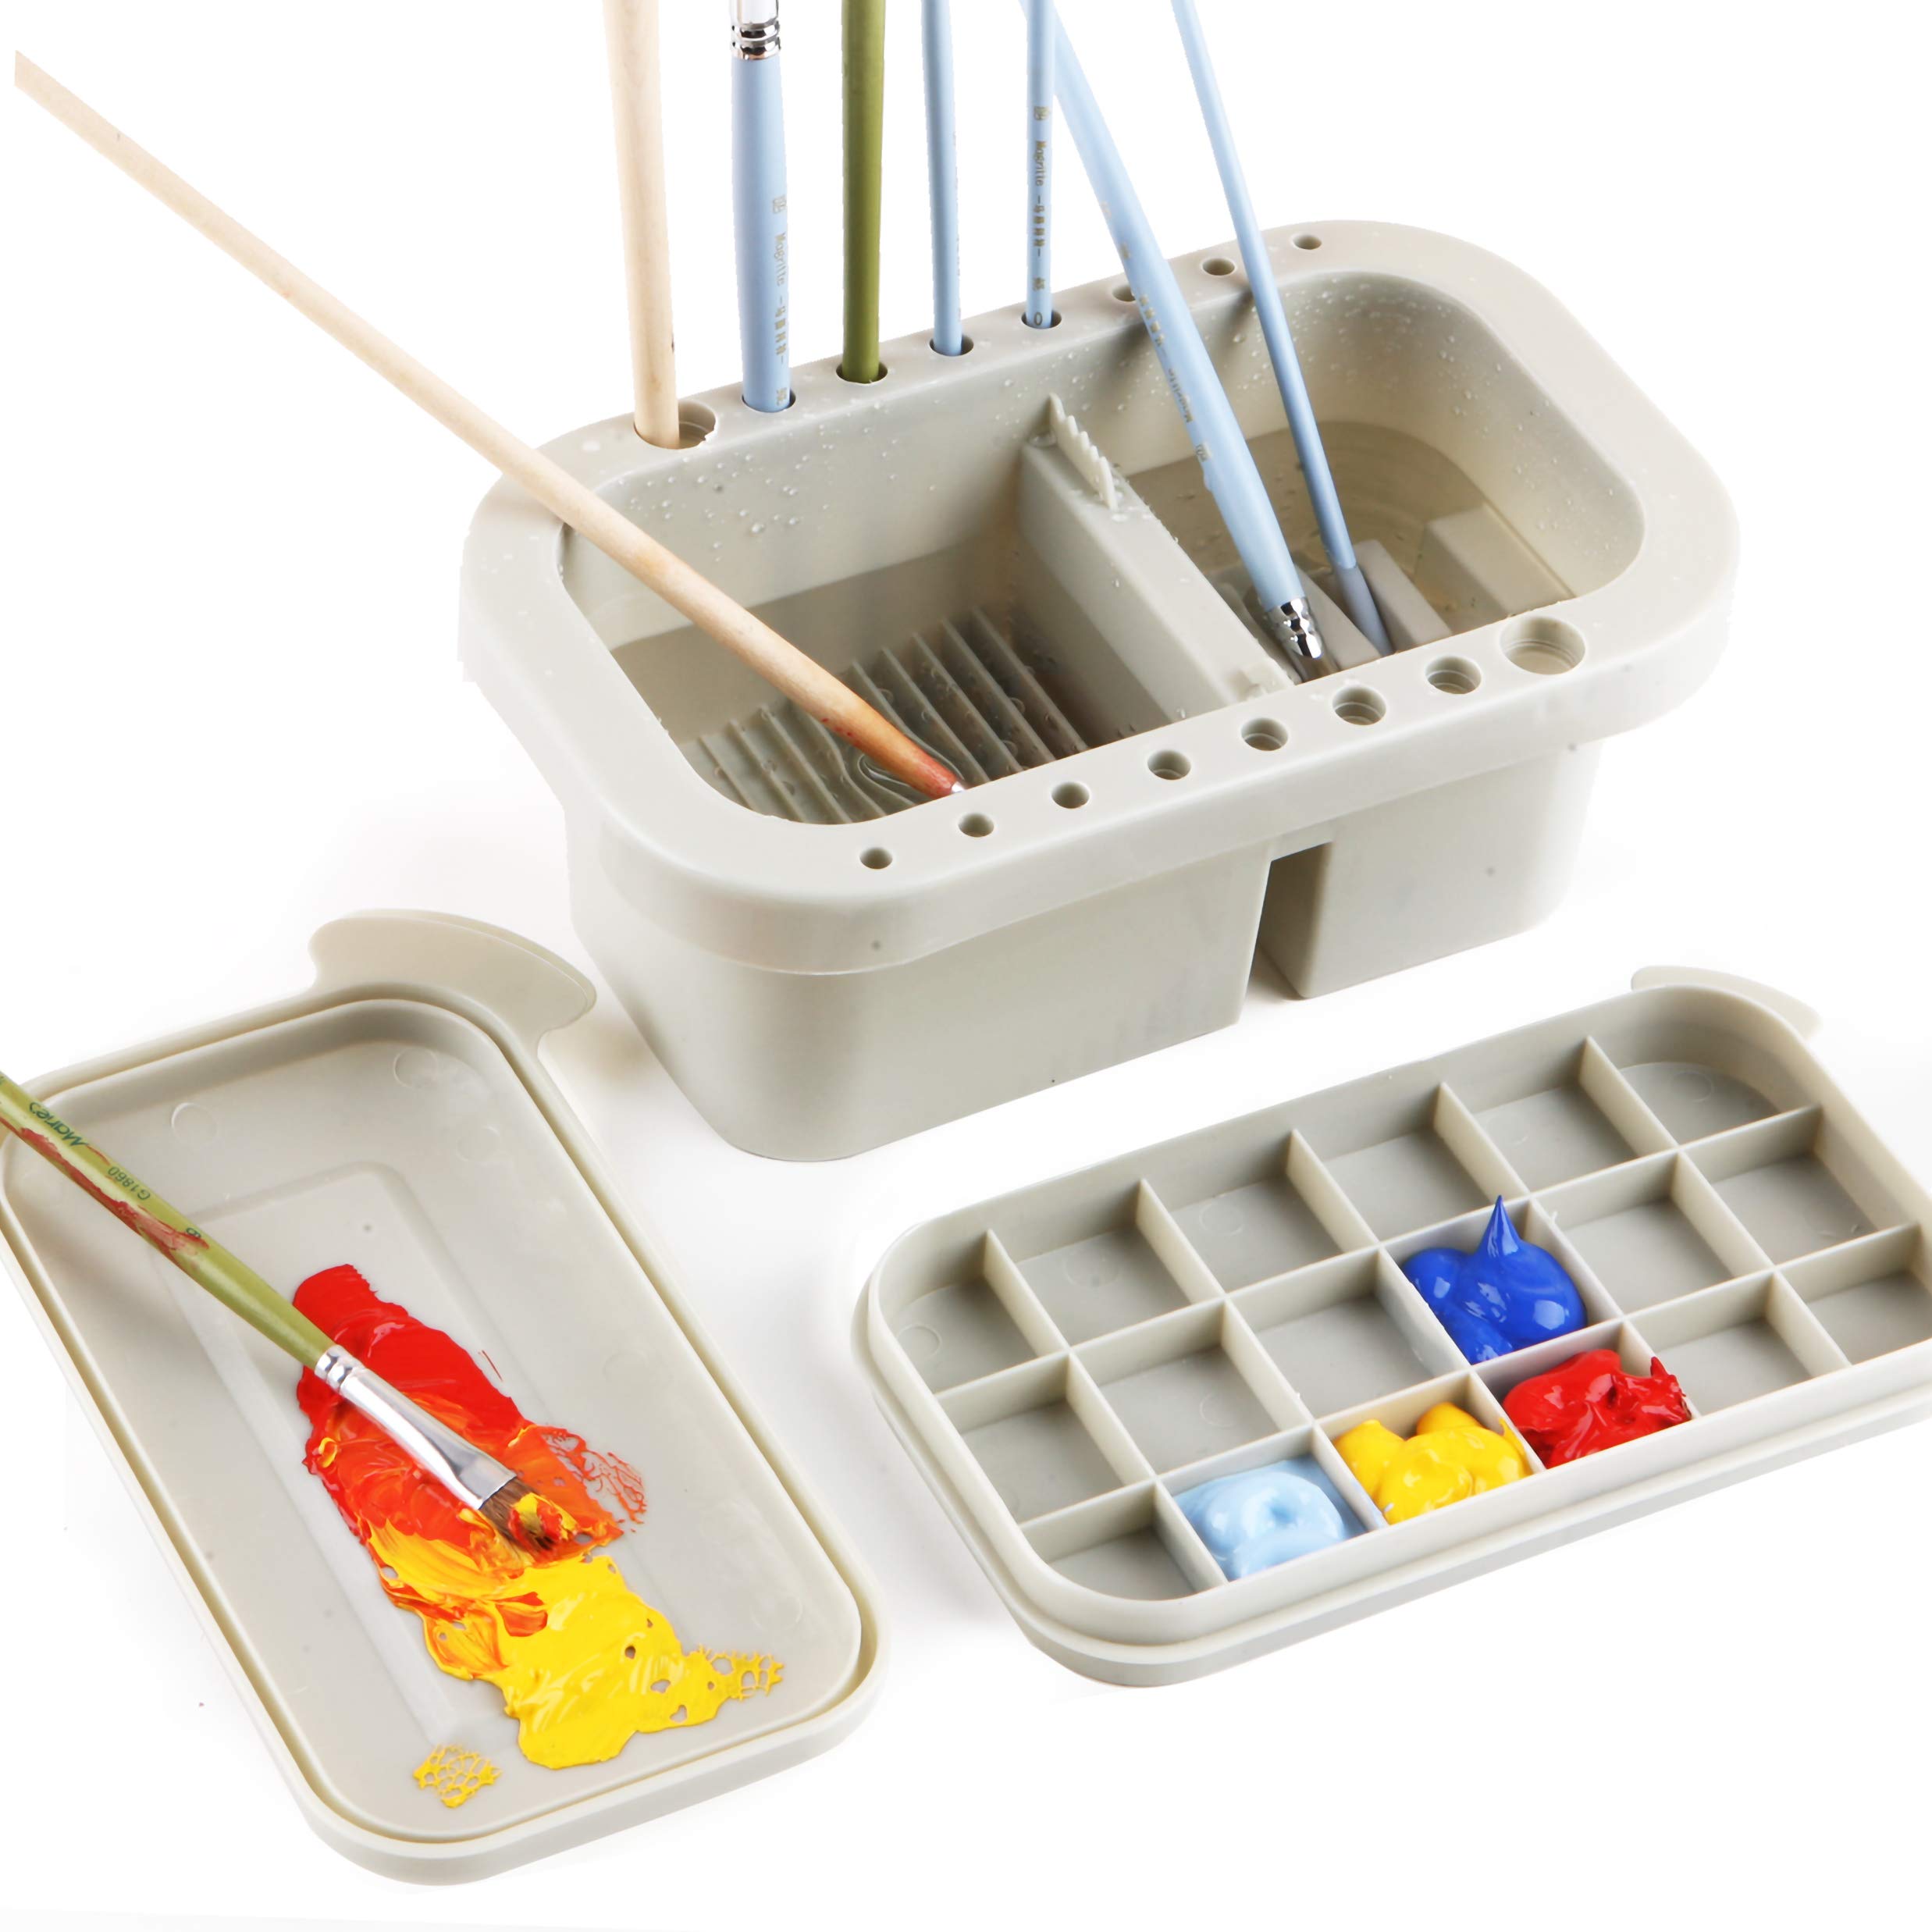 martol Multi-Use Paint Brush Basin with Brushes Holder Washer